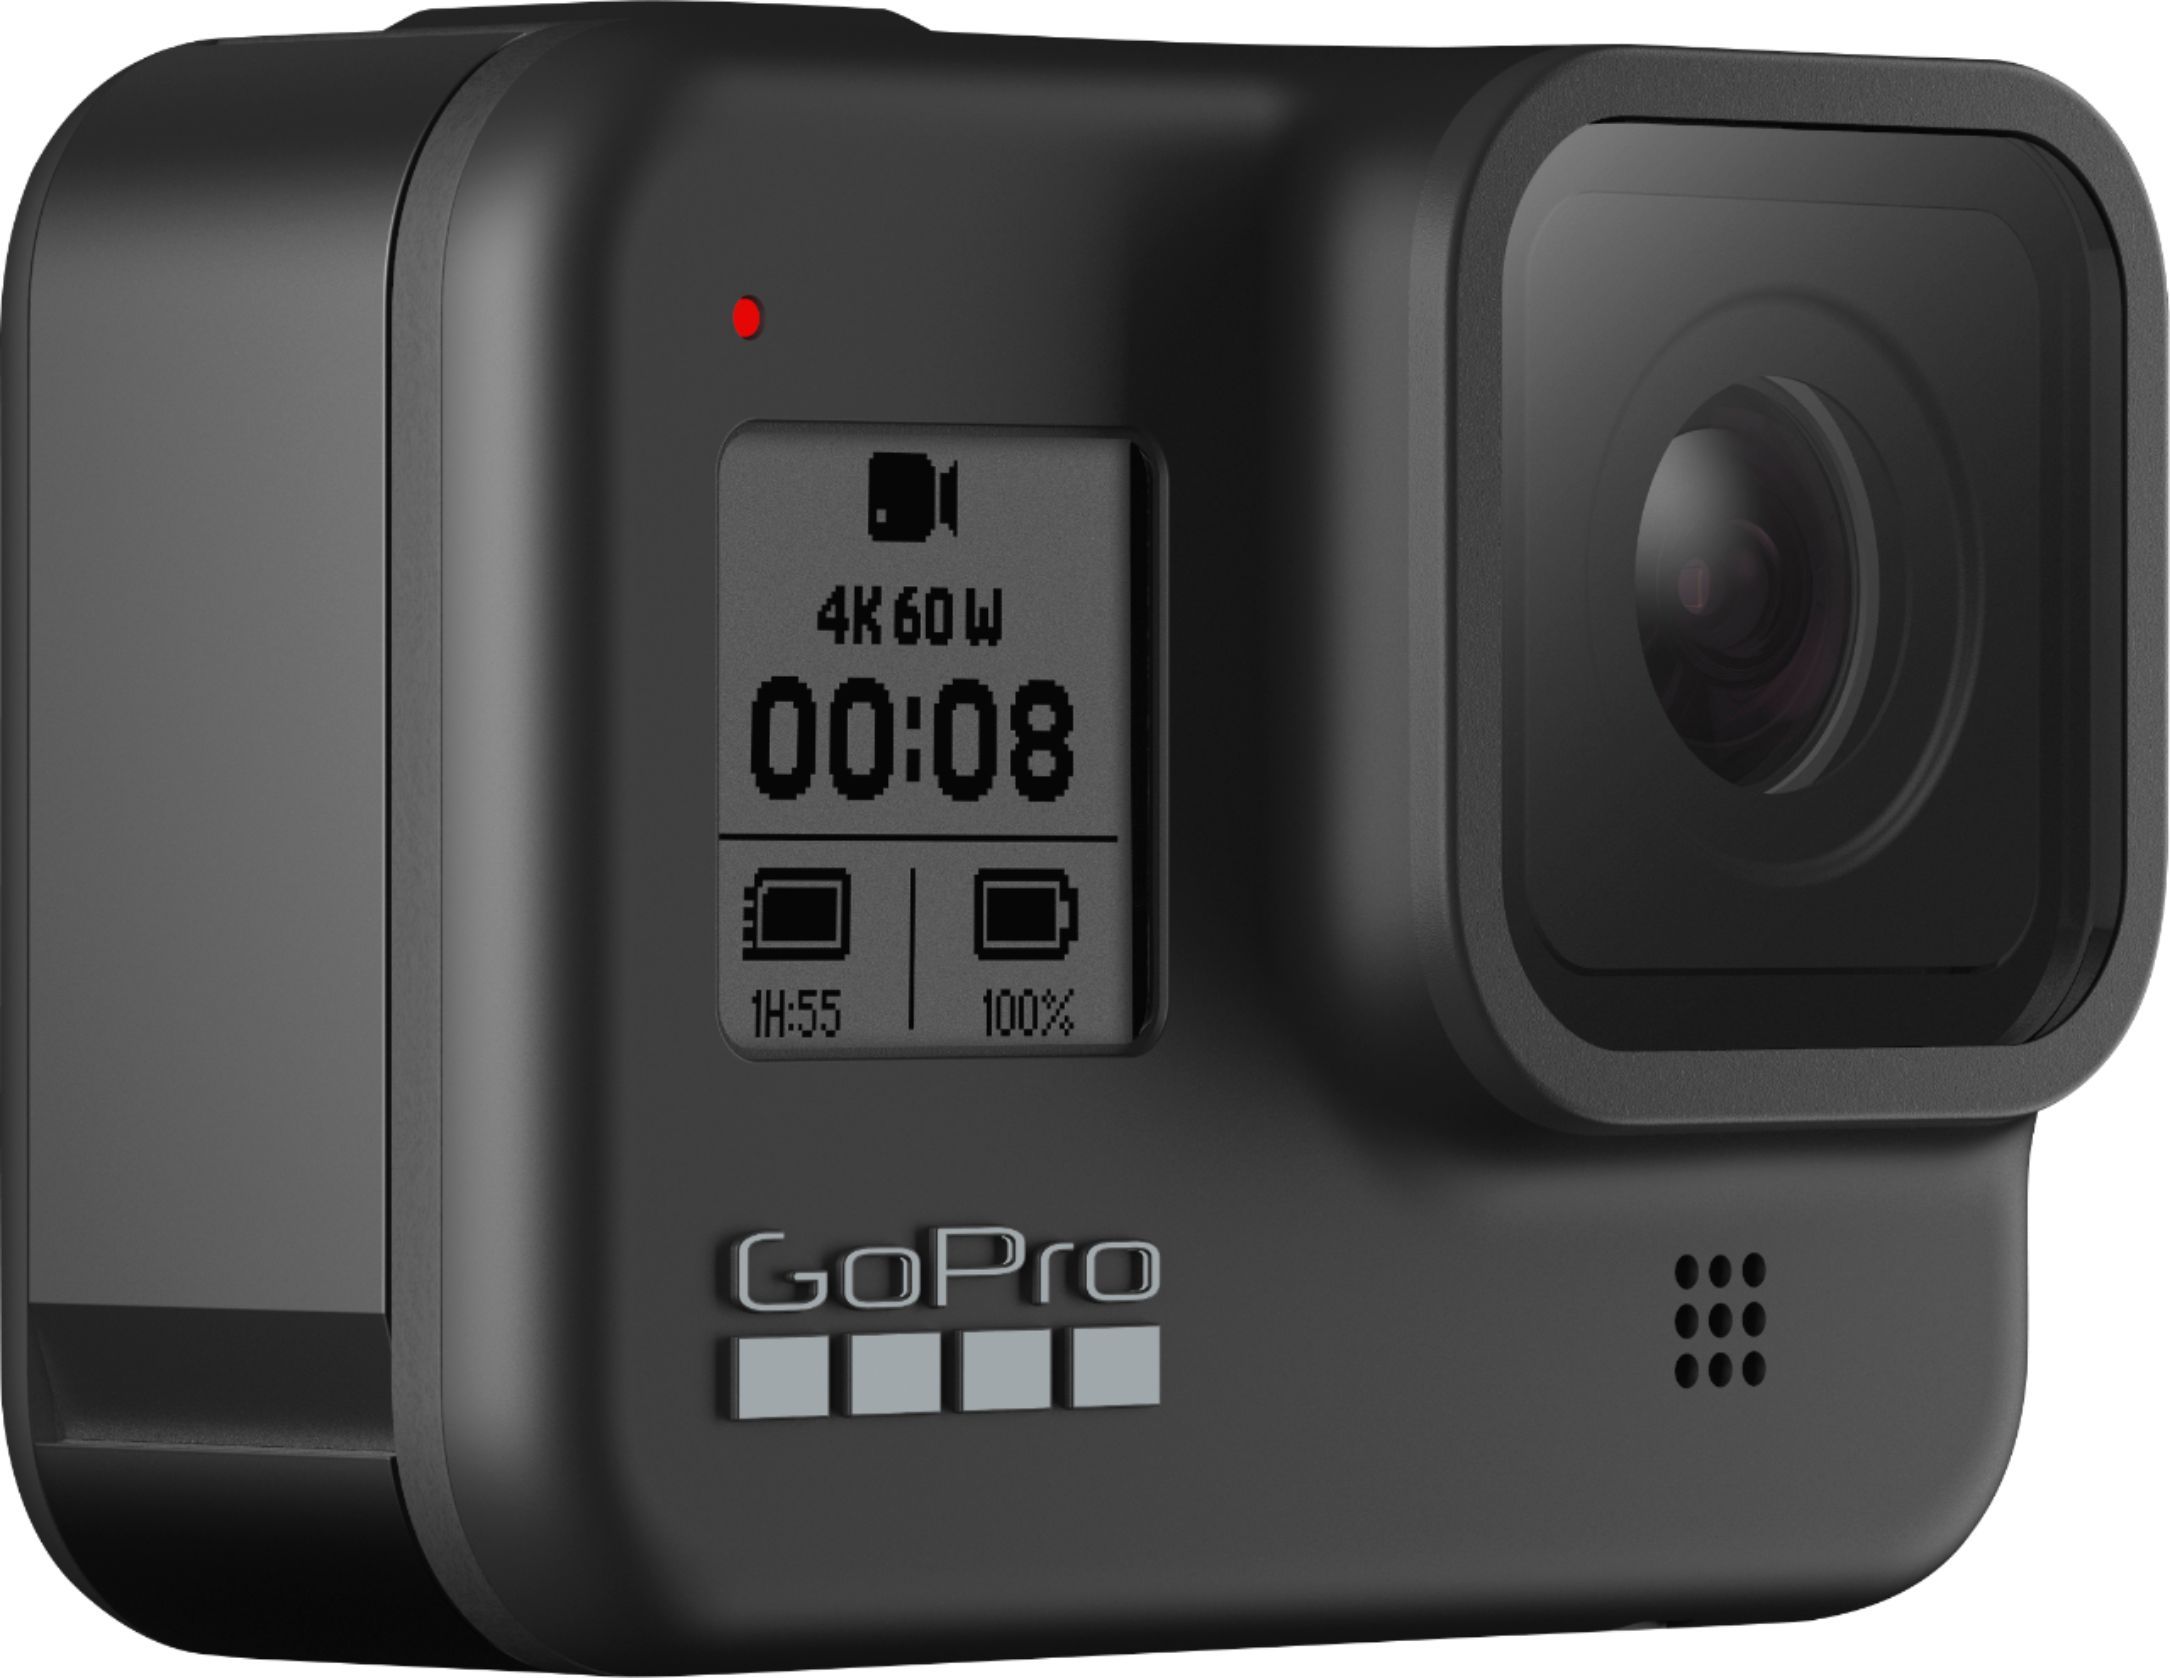 GoPro HERO8 Black 4K Waterproof Action Camera Black CHDHX-801 - Best Buy | Best Buy U.S.